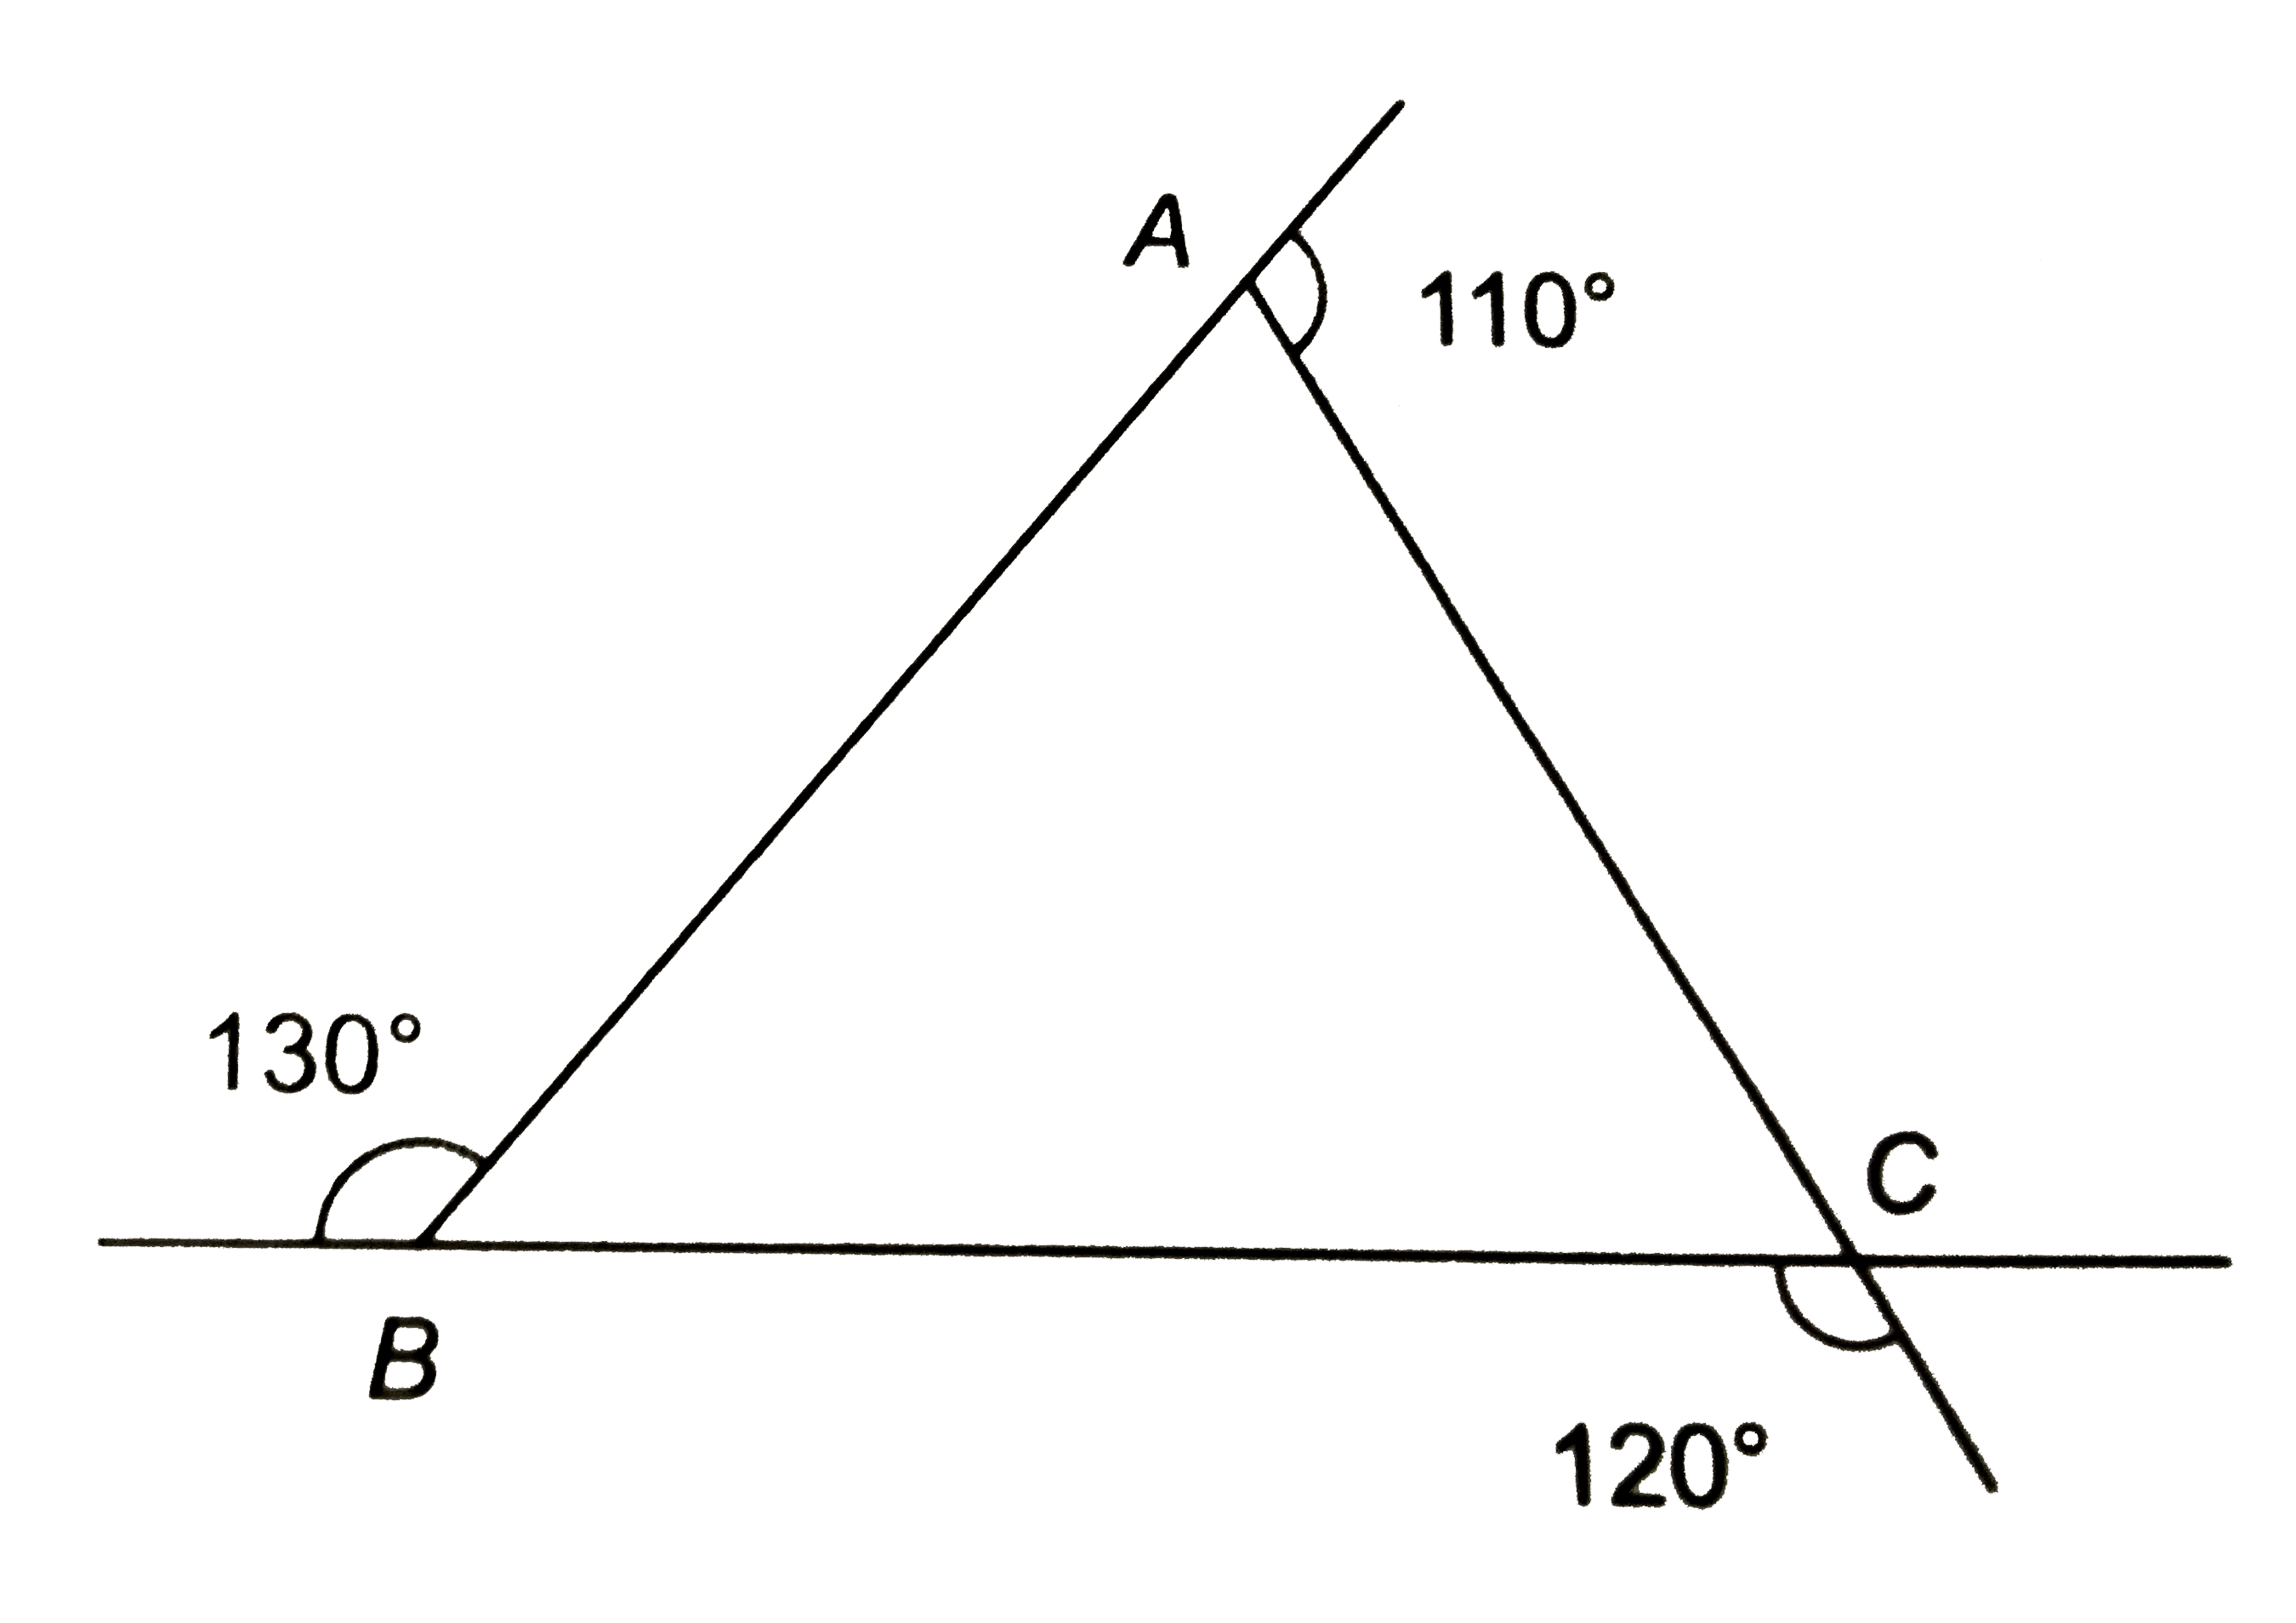 संलग्न चित्र में, DeltaABC की भुजाओं को उनकी लम्बाइयों को घटते क्रम में लिखिये।